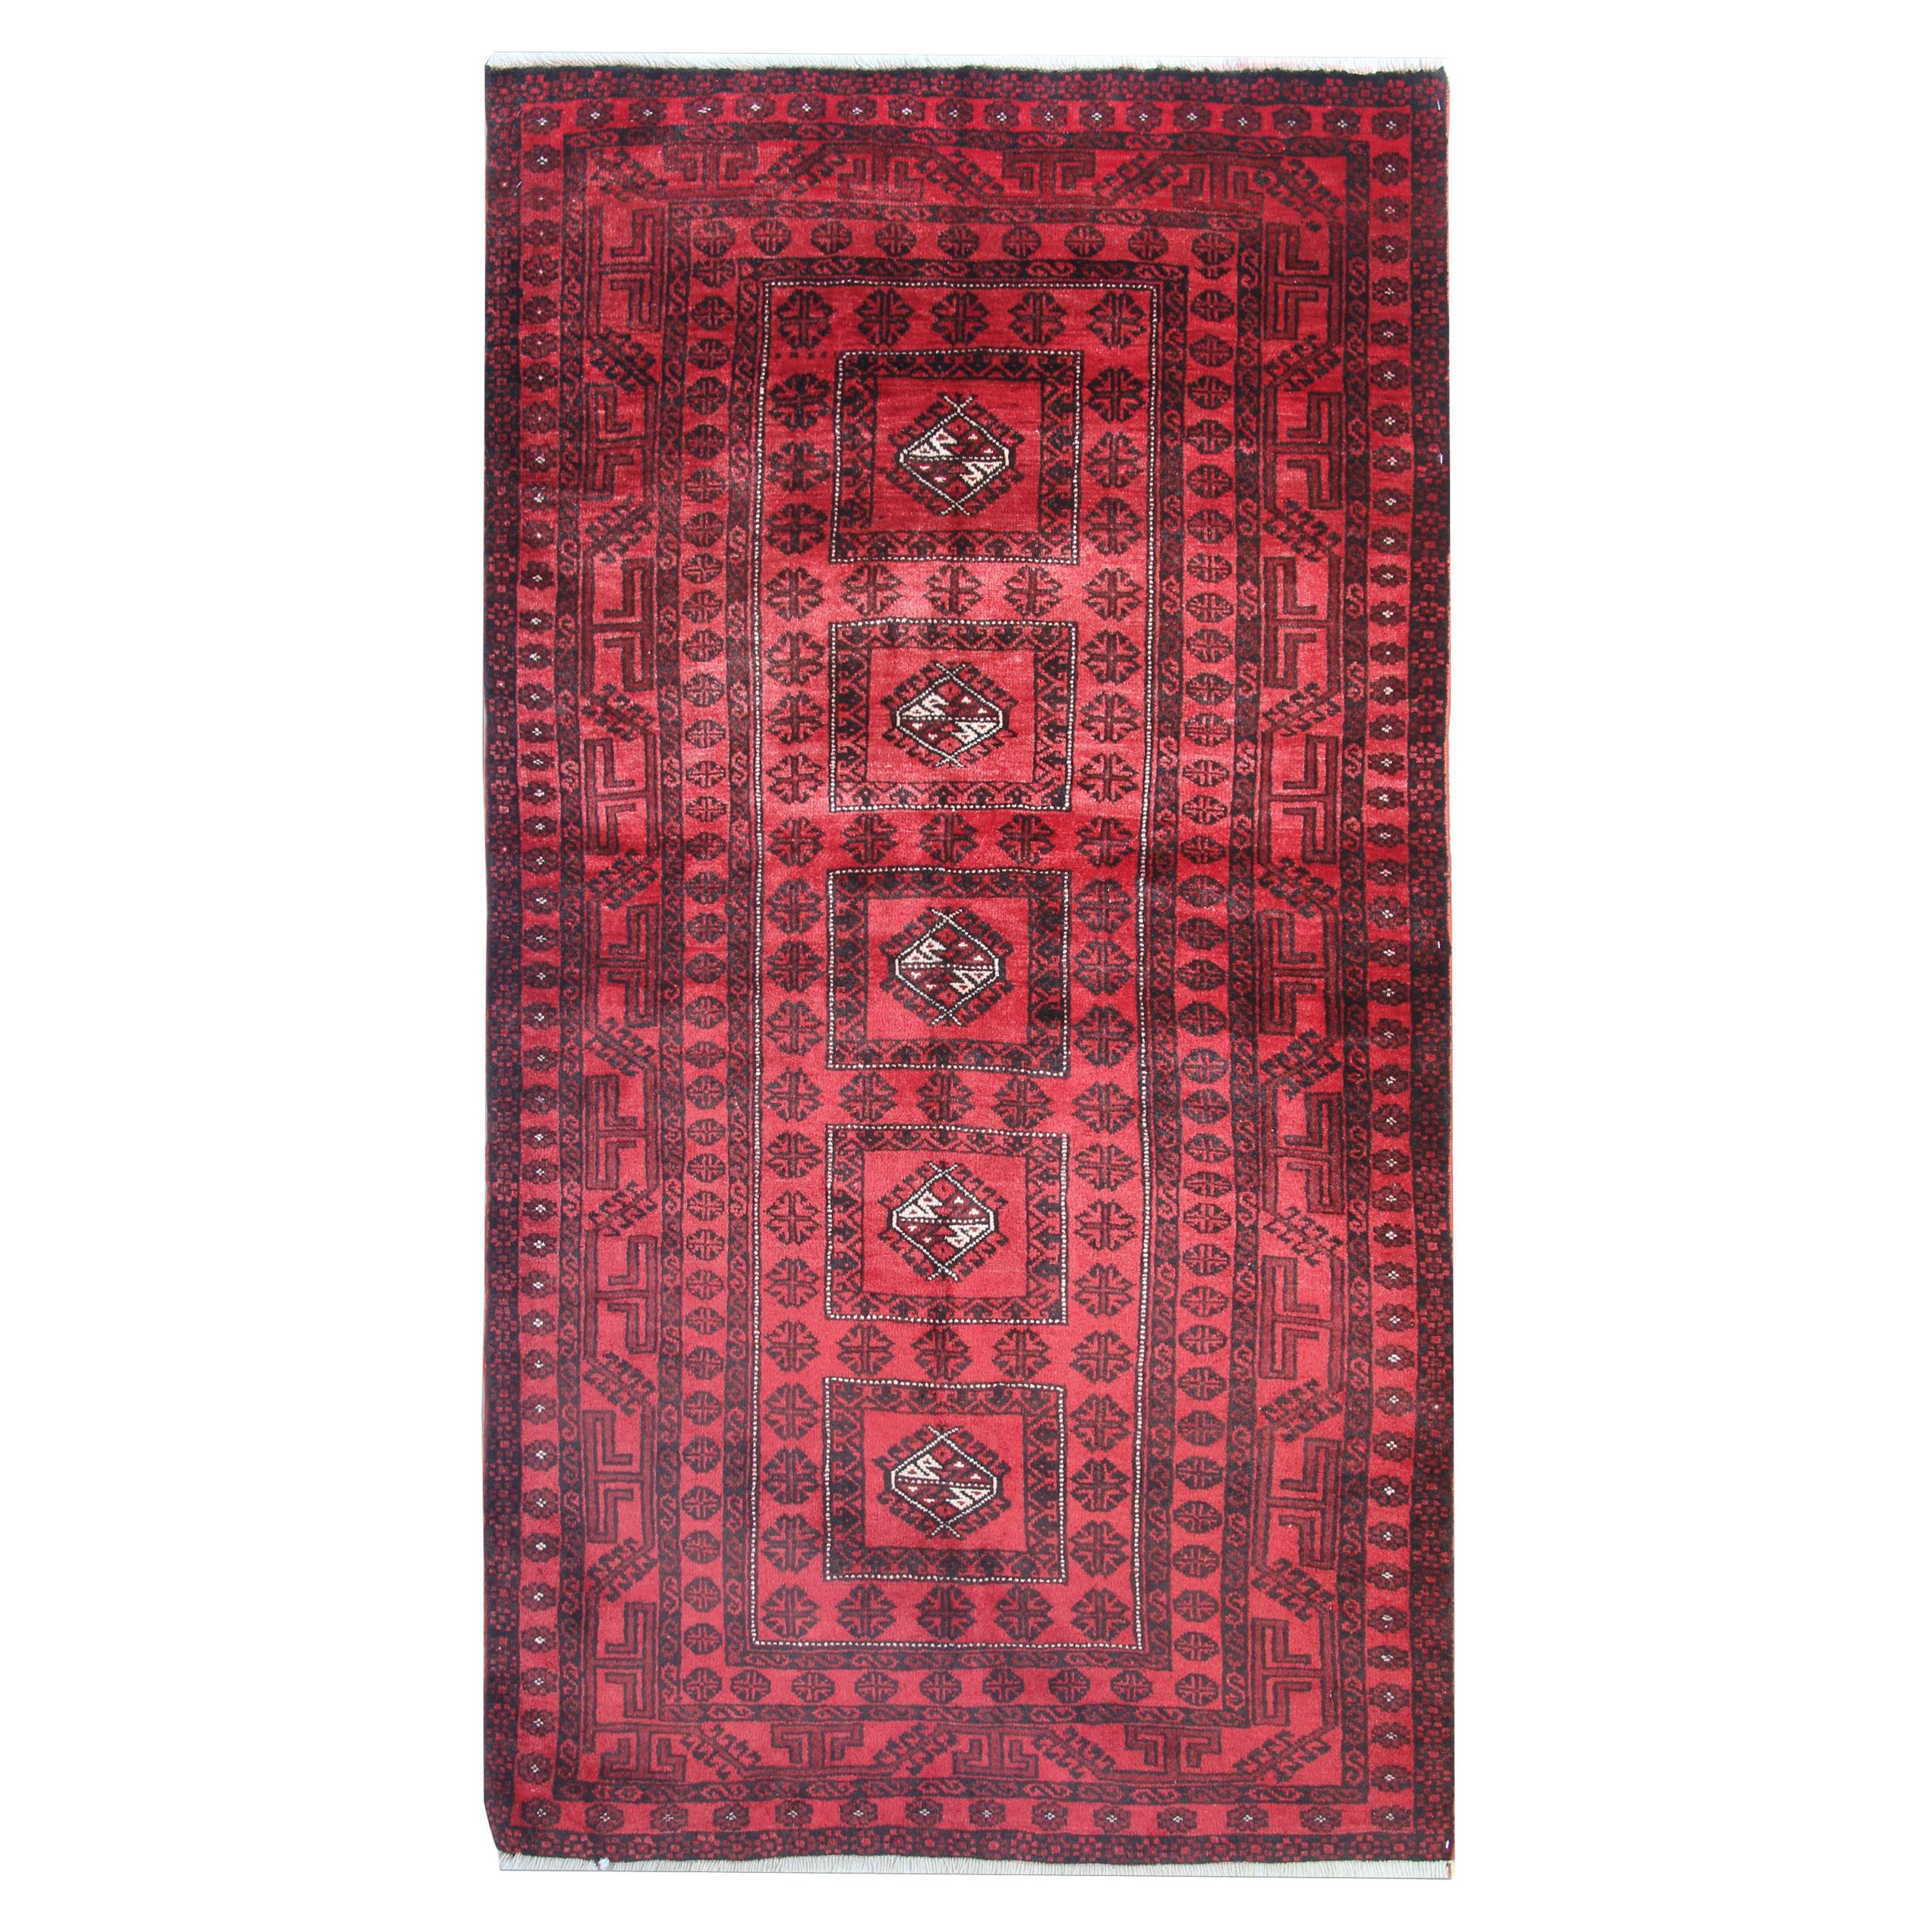 Handwoven Rug Oriental Afghan Carpet Red Wool Area Rug